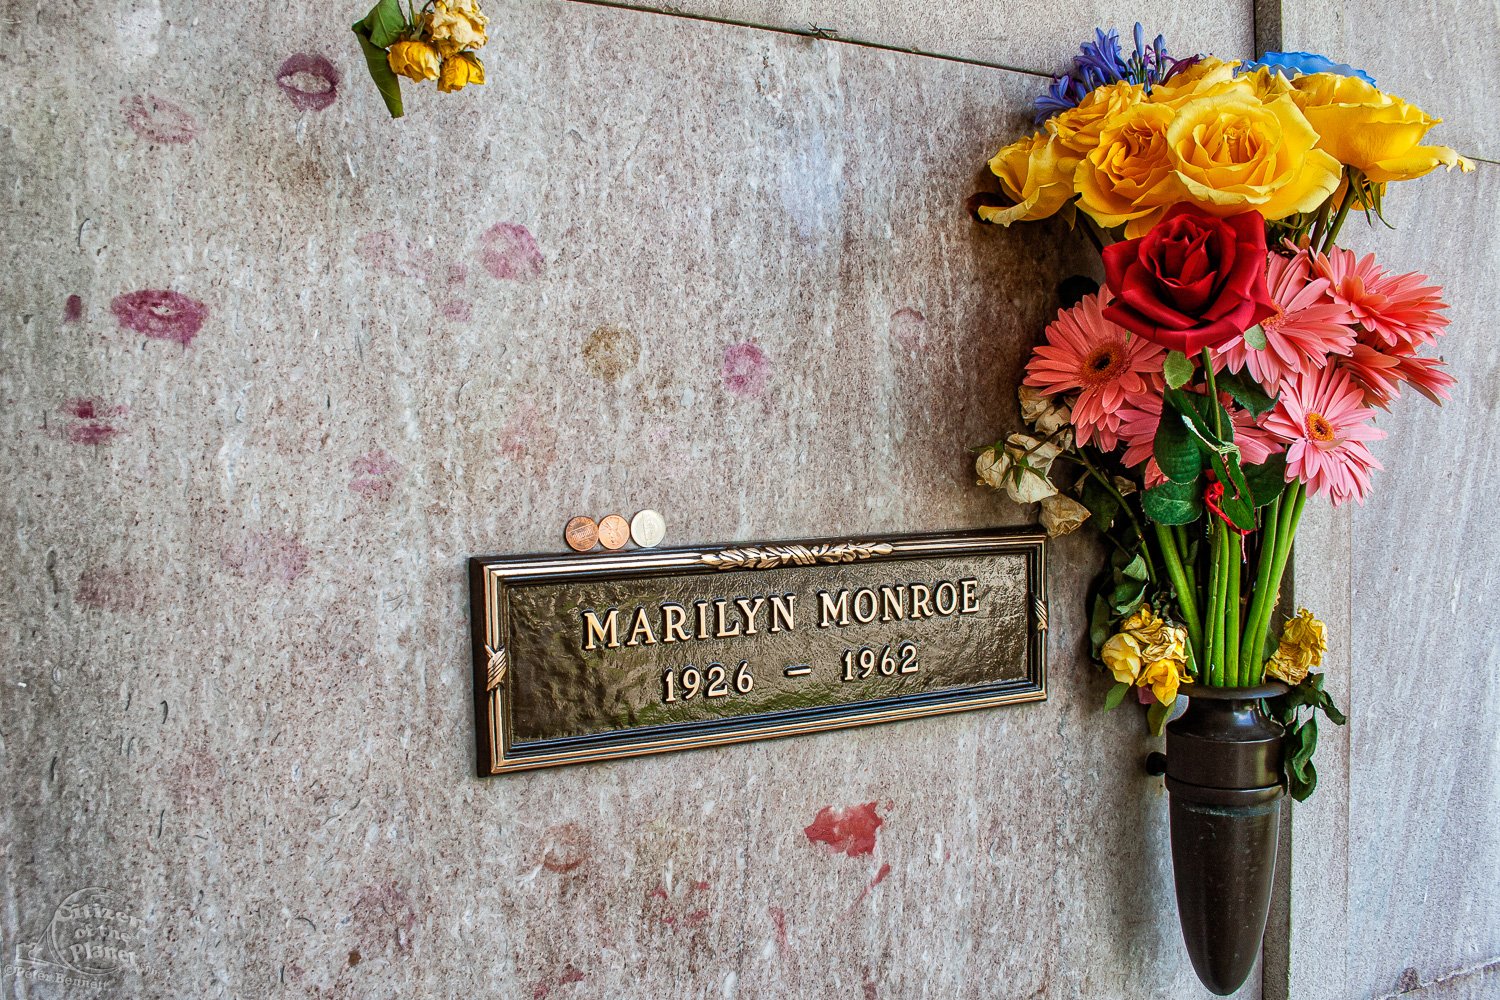 Marilyn Monroe's Grave, Westwood Memorial Cemetery